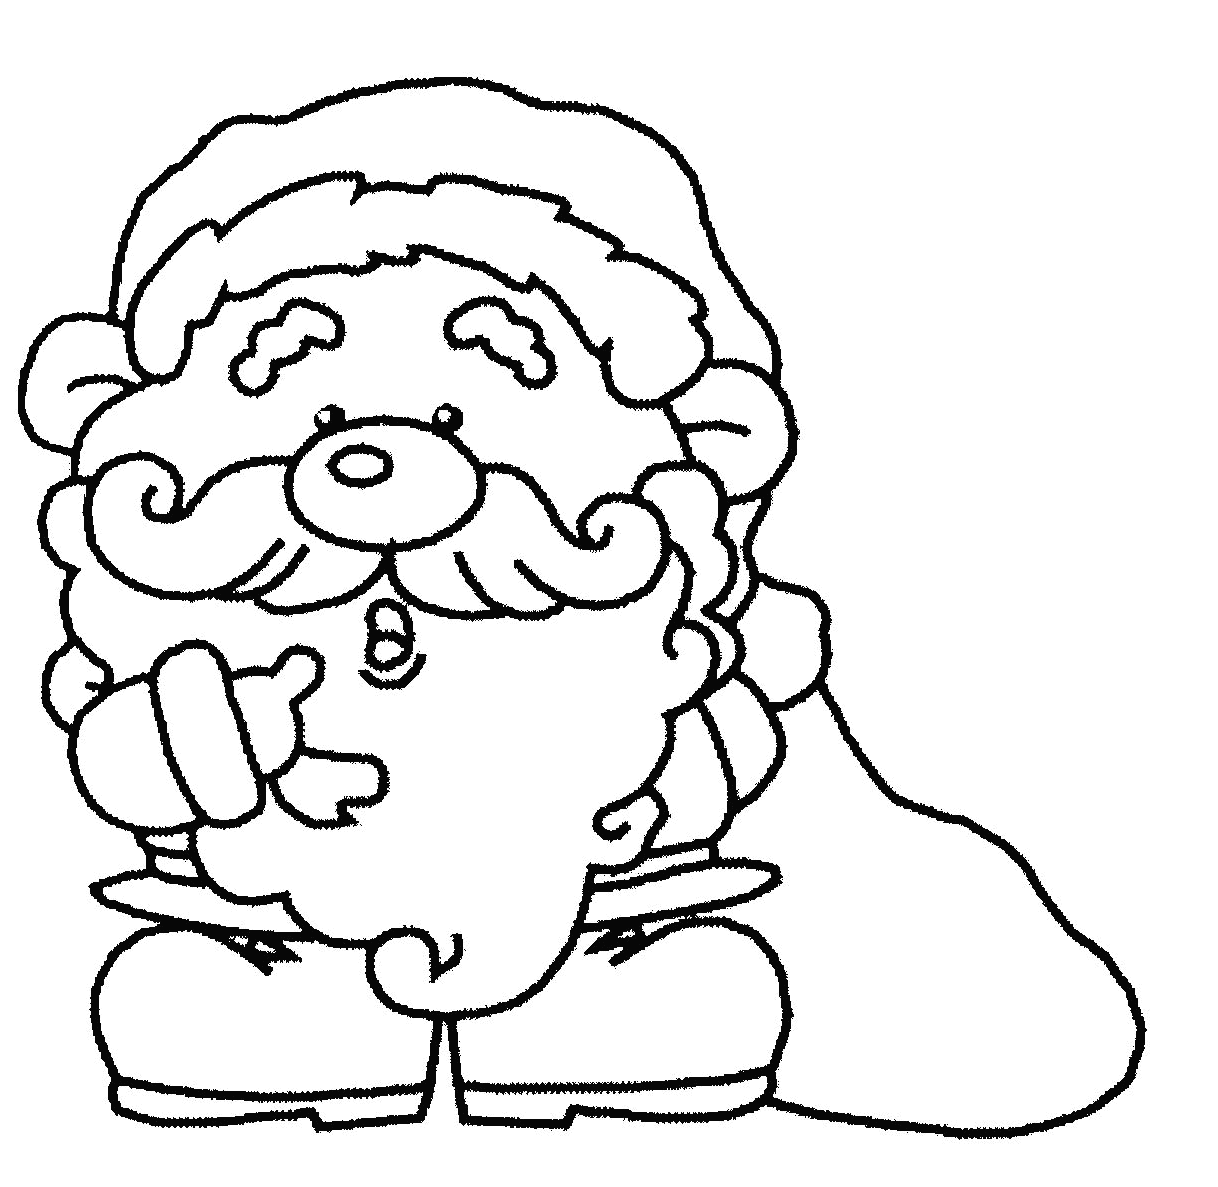 Santa Claus drawing and coloring page